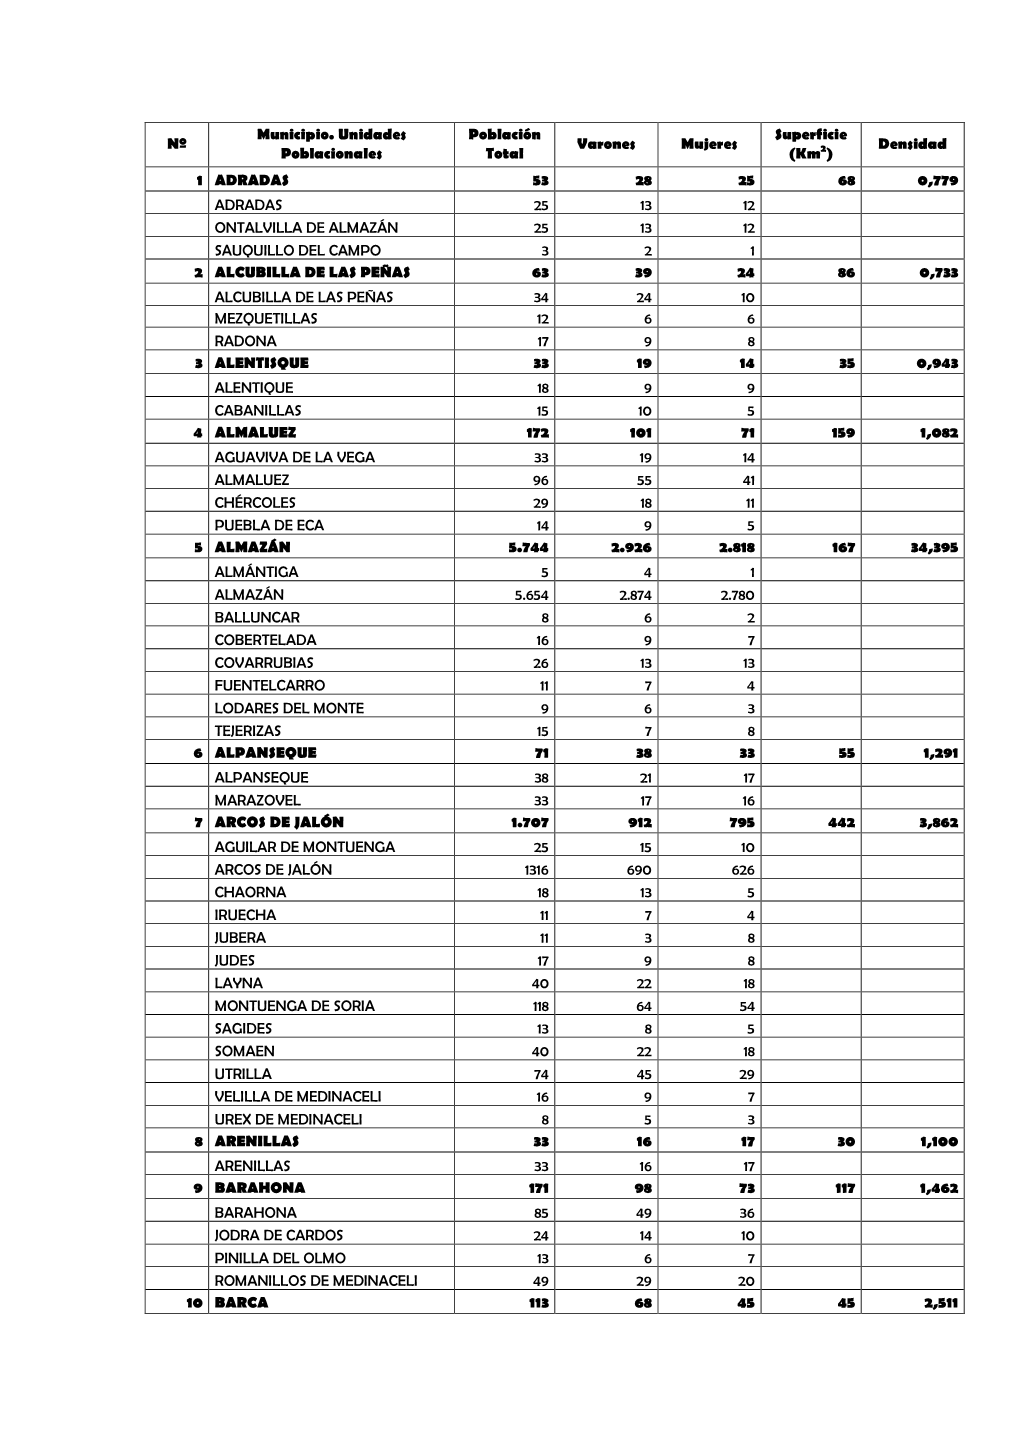 Nº Municipio. Unidades Poblacionales Población Total Varones